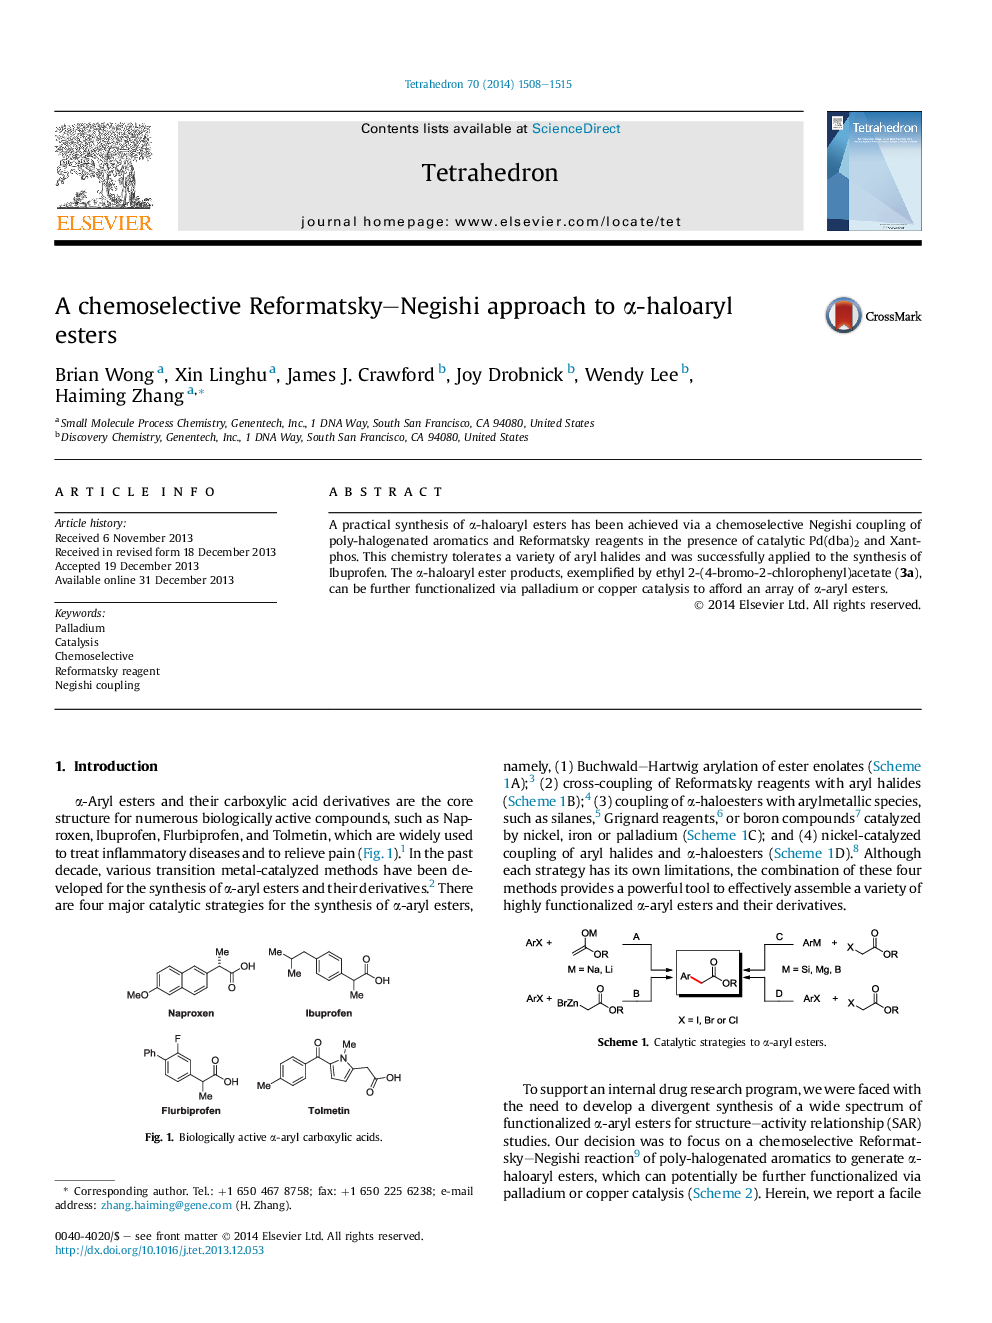 A chemoselective Reformatsky-Negishi approach to Î±-haloaryl esters